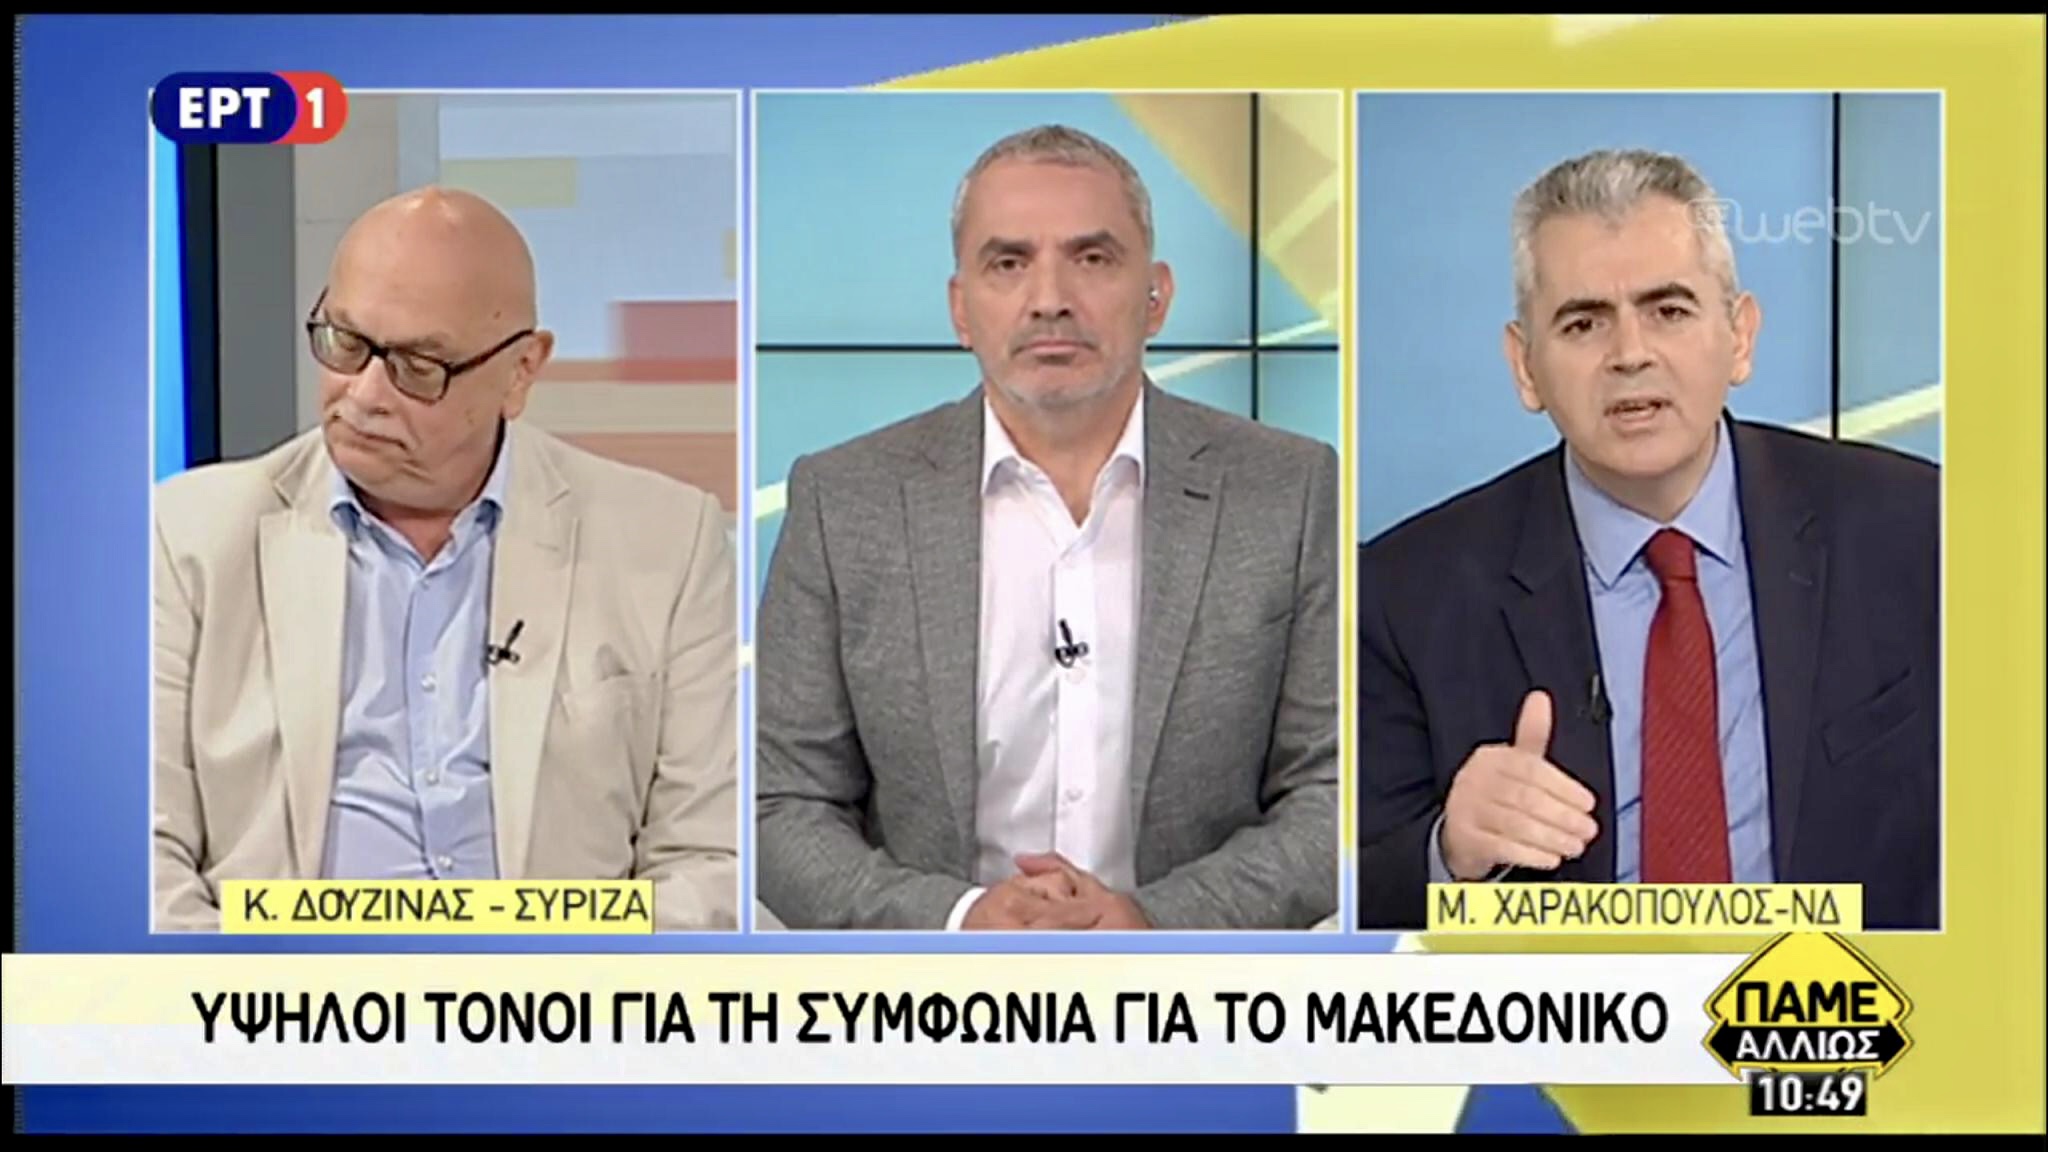 Χαρακόπουλος: "Καμία κυβέρνηση ως σήμερα δεν έδωσε μακεδονική εθνότητα και γλώσσα"